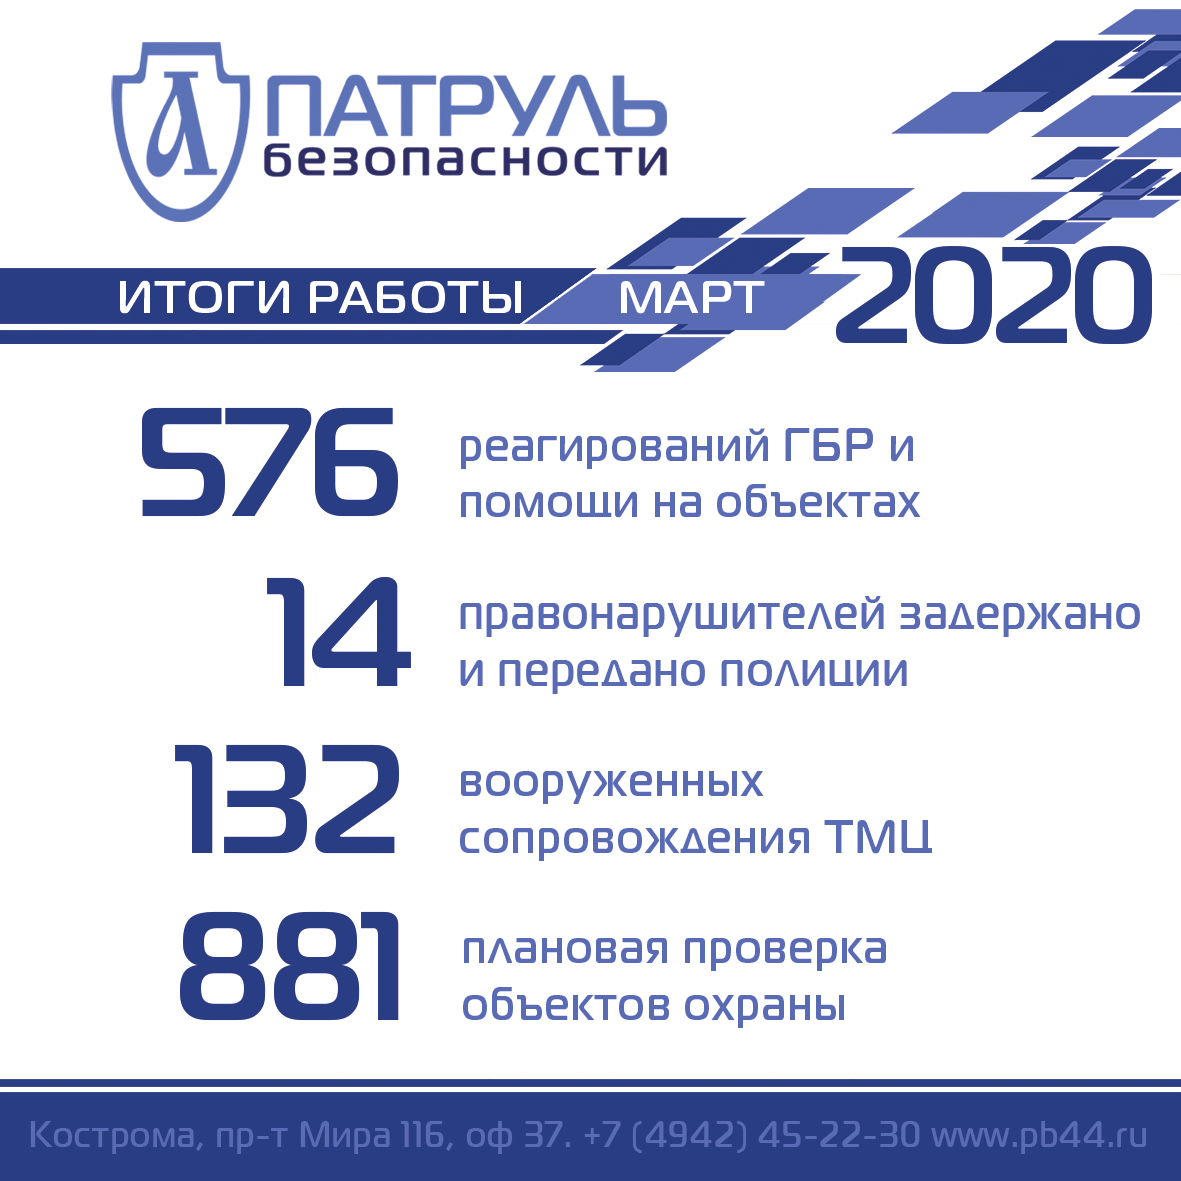 Итоги работы компании "Патруль Безопасности" в марте 2020 года в сфере обеспечения безопасности в Костроме и Костромской области